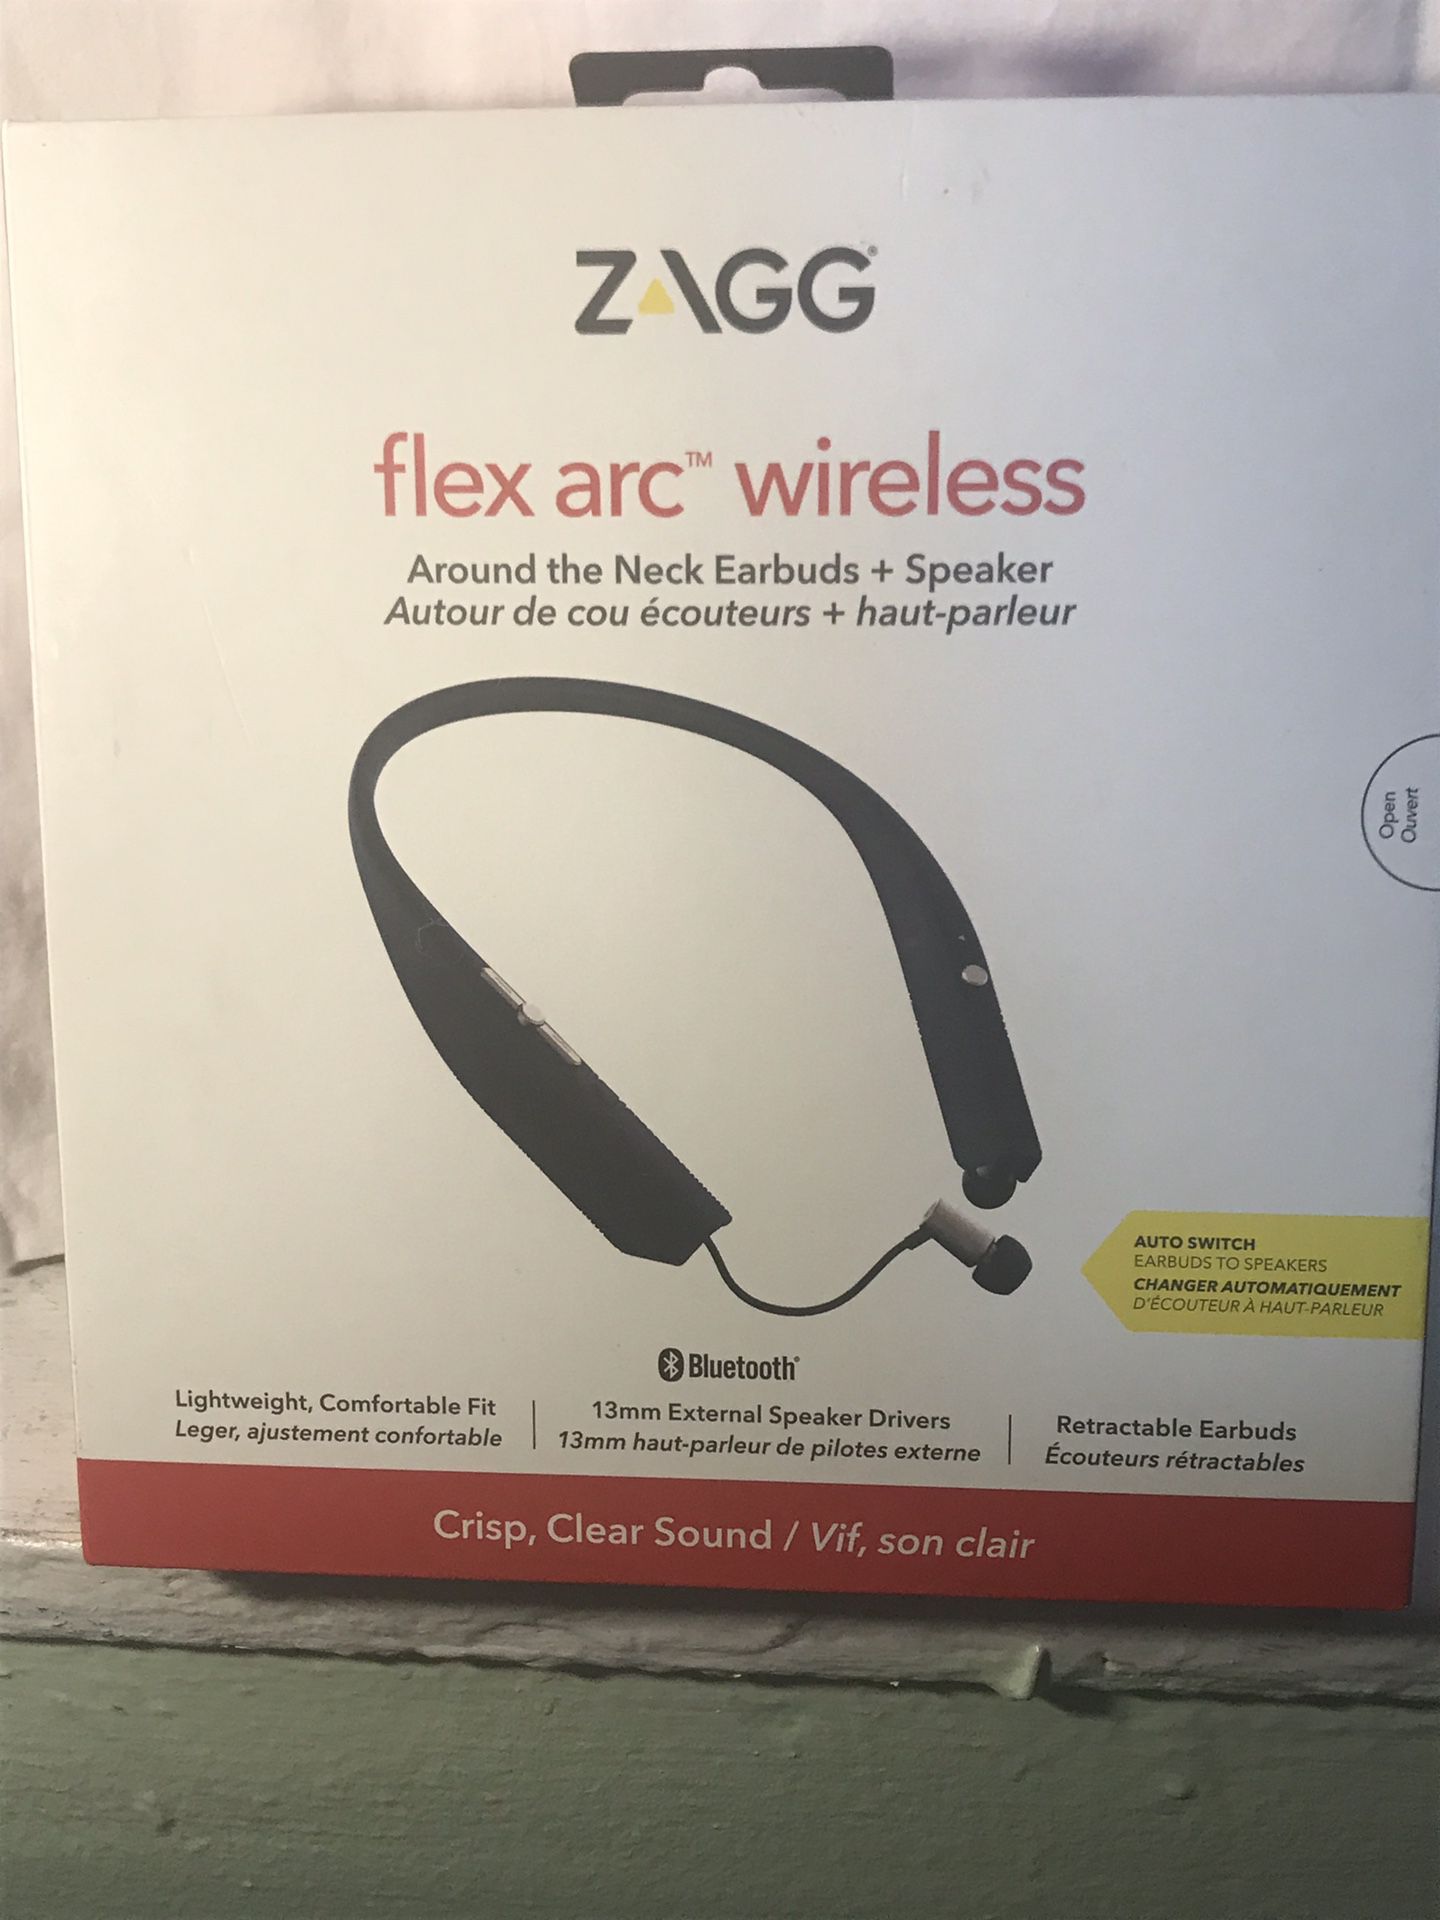 Zagg flex arc wireless around the neck earbuds + Speaker